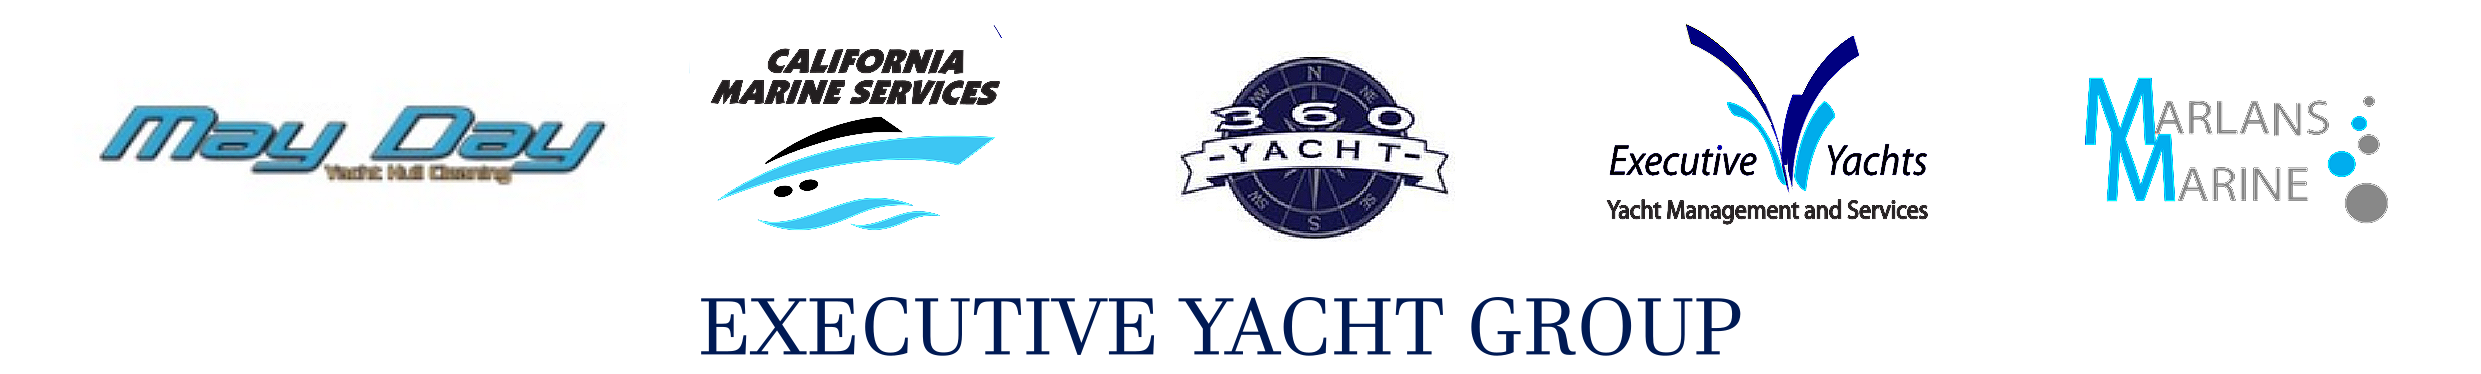 Executive Yacht Group